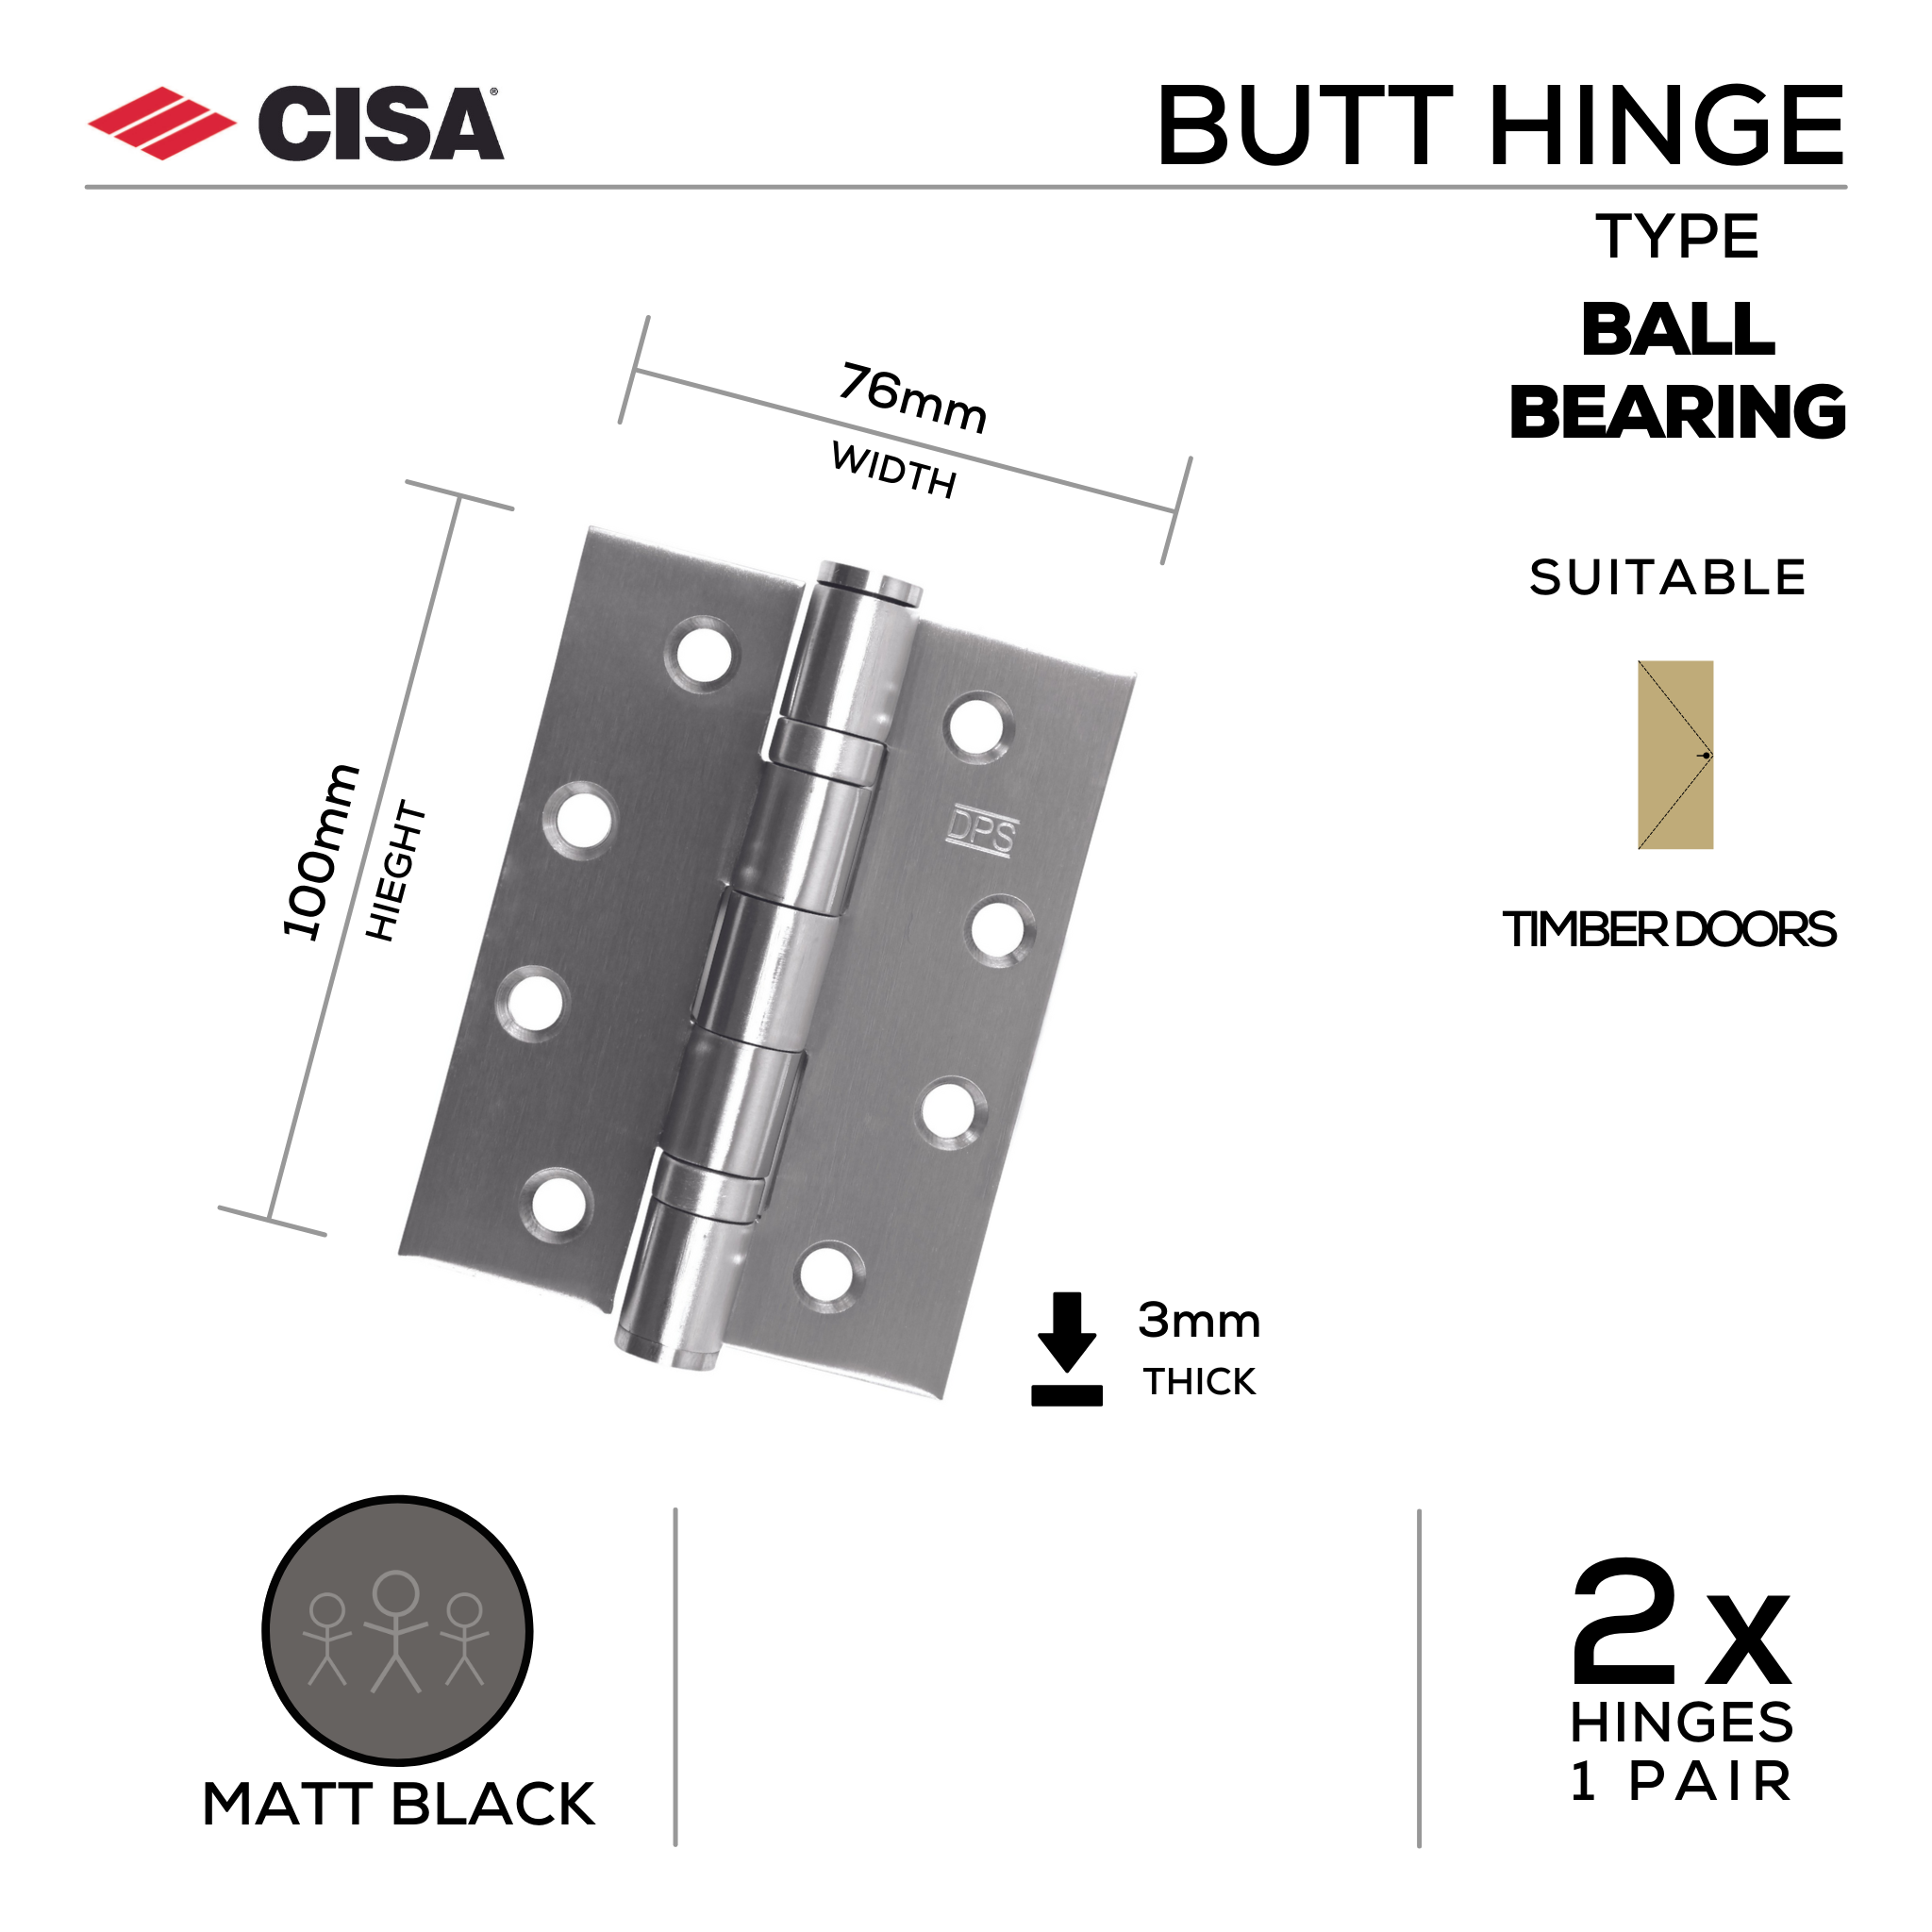 FH76X3B-MBL, Butt Hinge, Double Ball Bearing, 2 x Hinges (1 Pair), 100mm (h) x 76mm (w) x 3mm (t), Matt Black, CISA